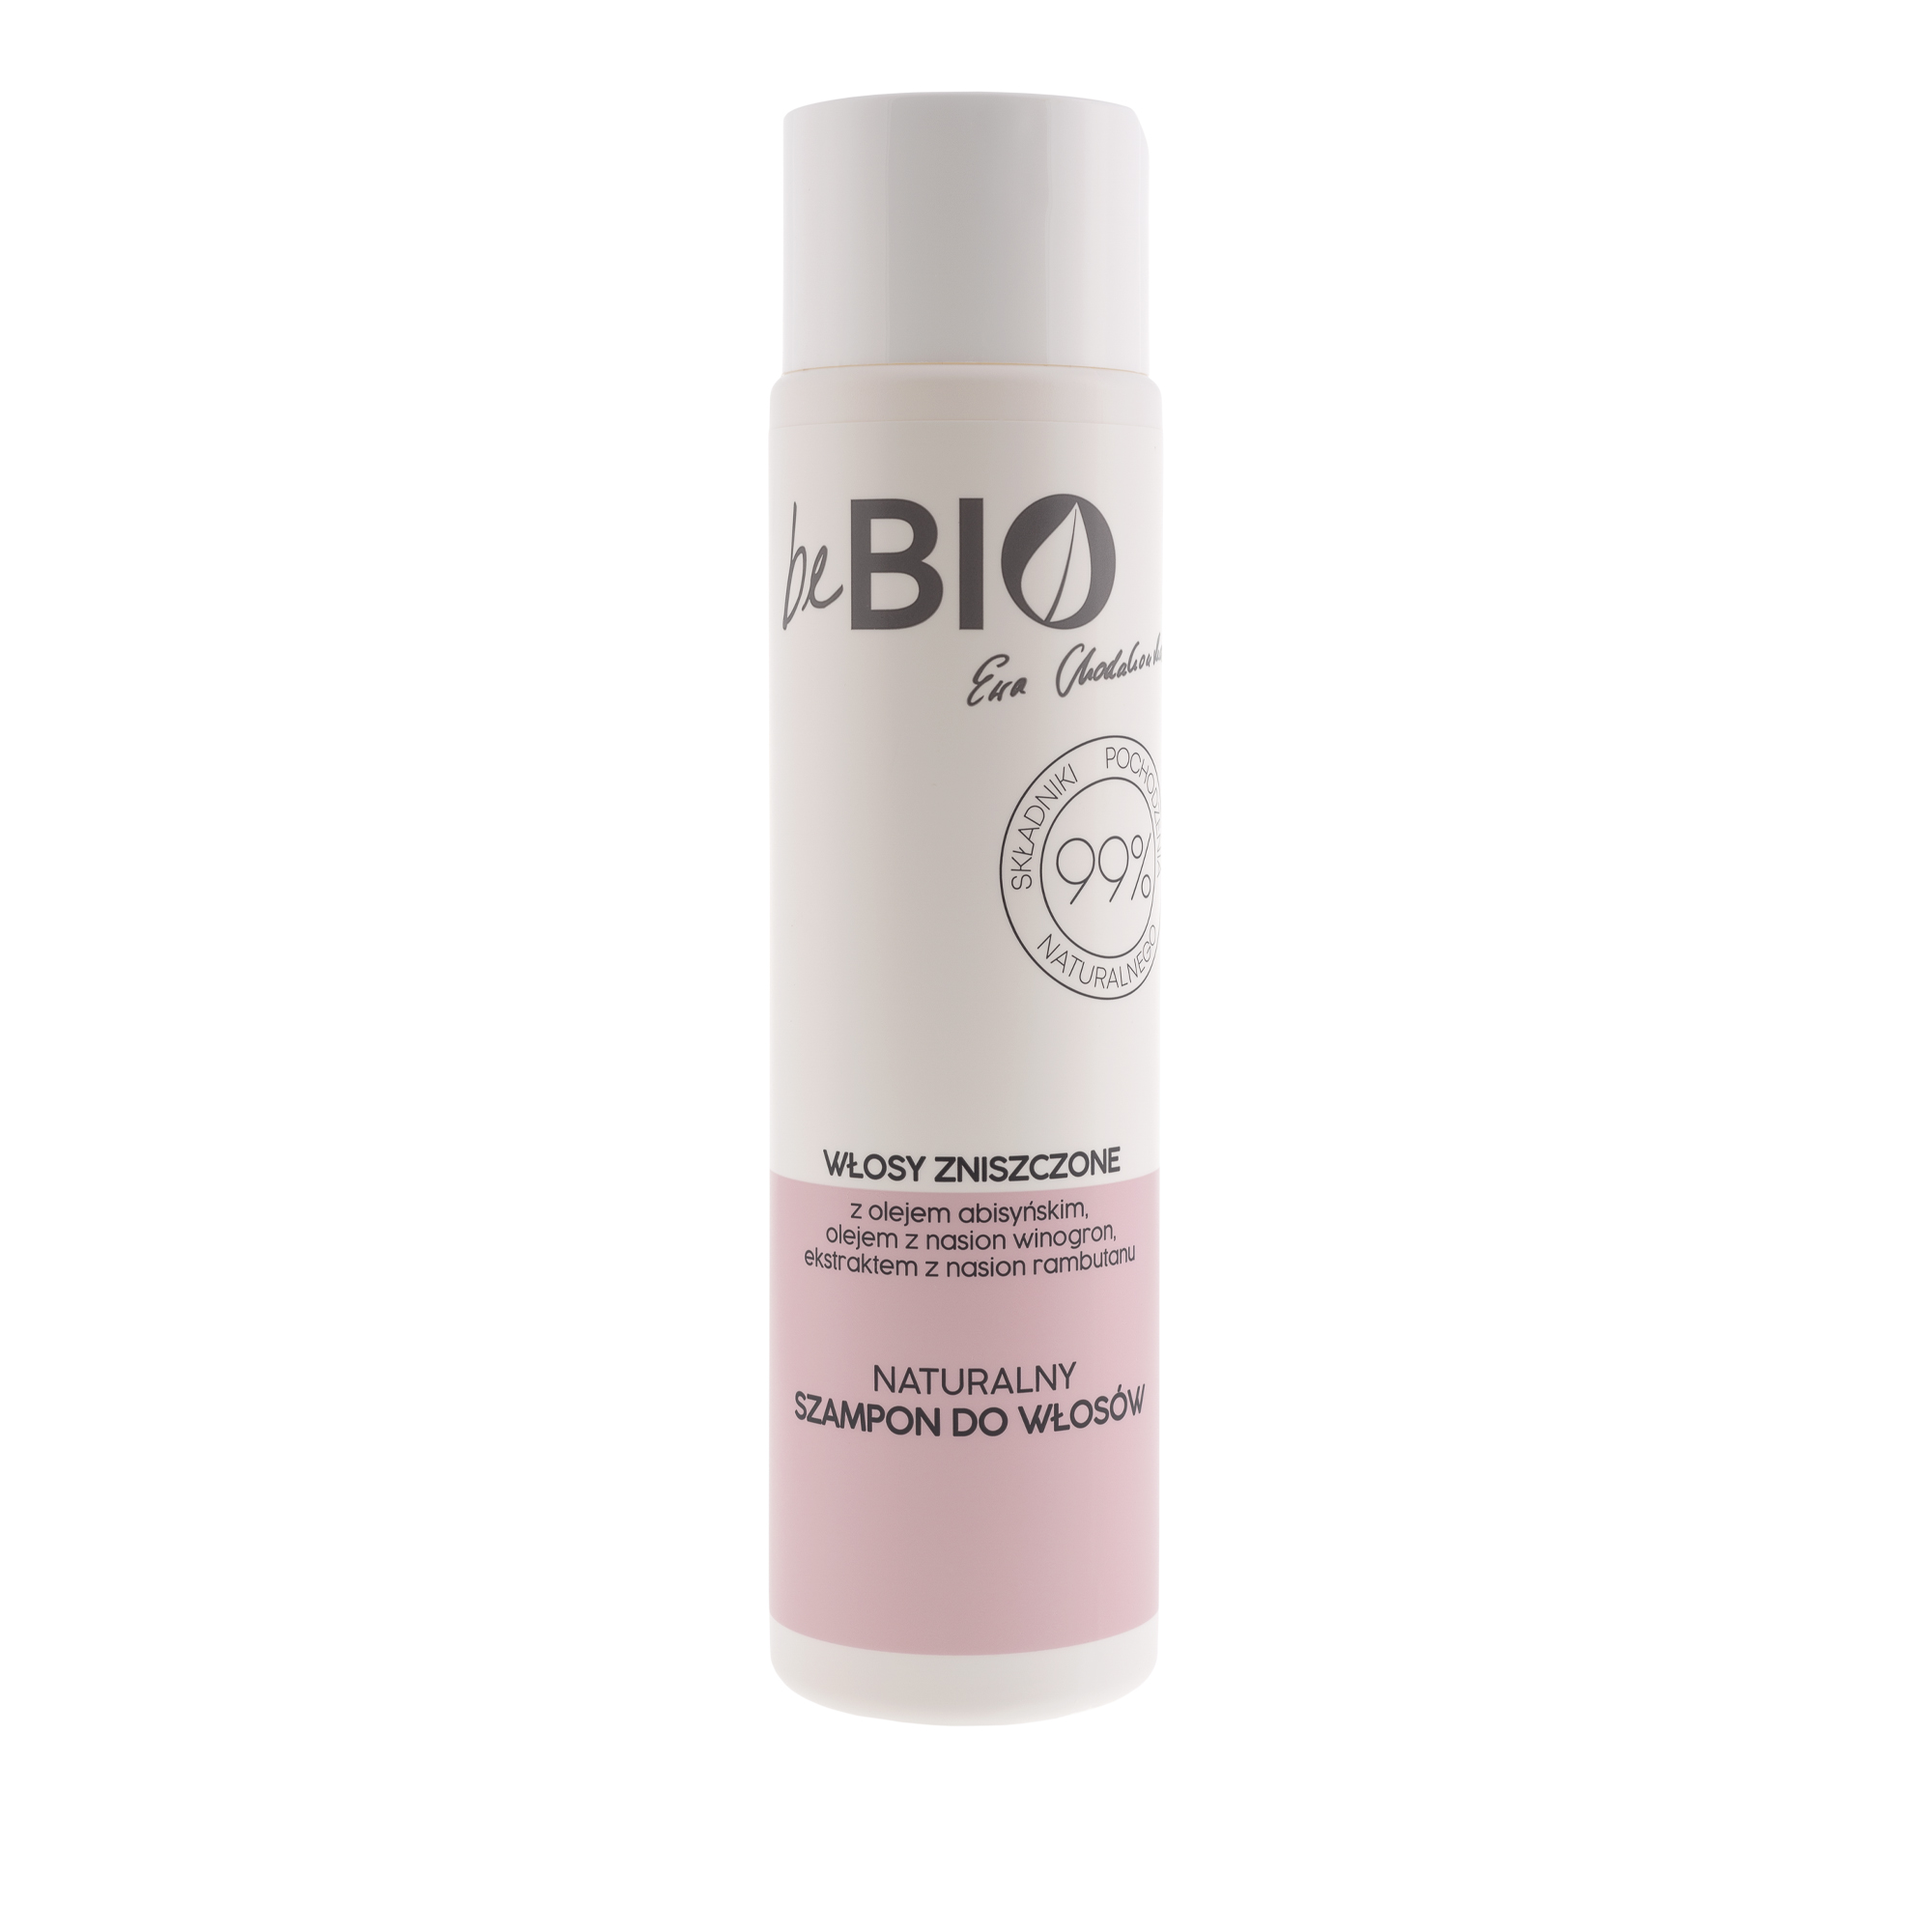 Шампунь для поврежденных волос, BeBio, 300 мл